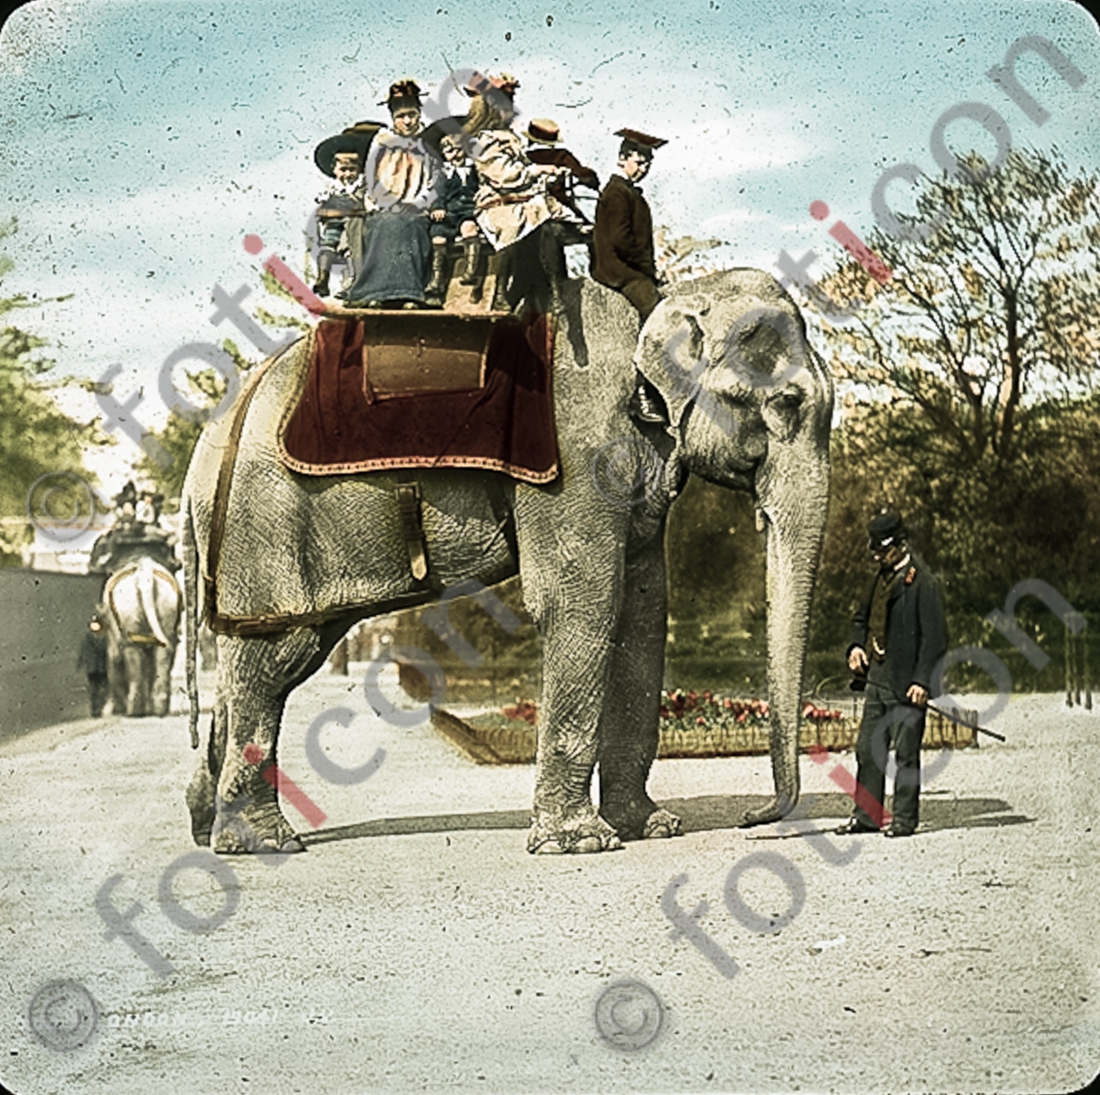 Auf einem Elefanten | On an elephant - Foto foticon-simon-167-016.jpg | foticon.de - Bilddatenbank für Motive aus Geschichte und Kultur